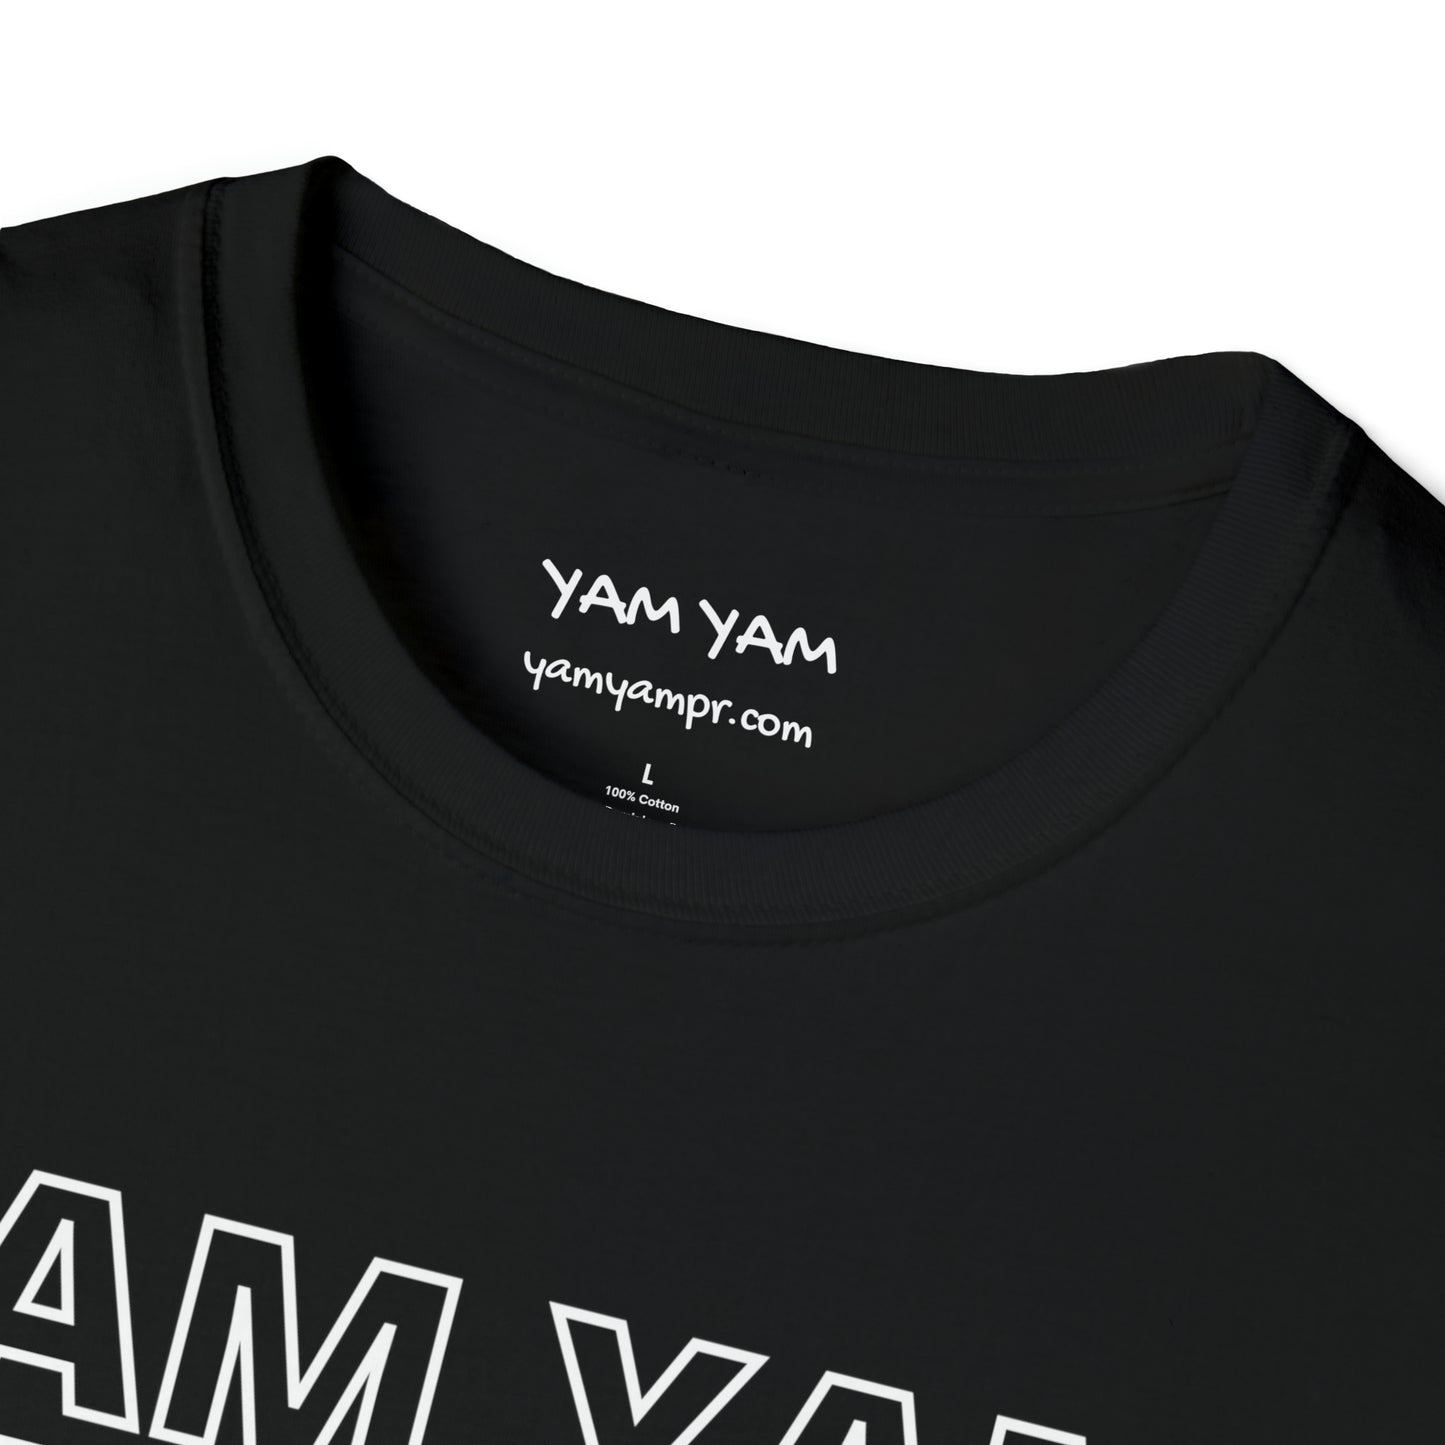 Yam Yam Thank You TShirt